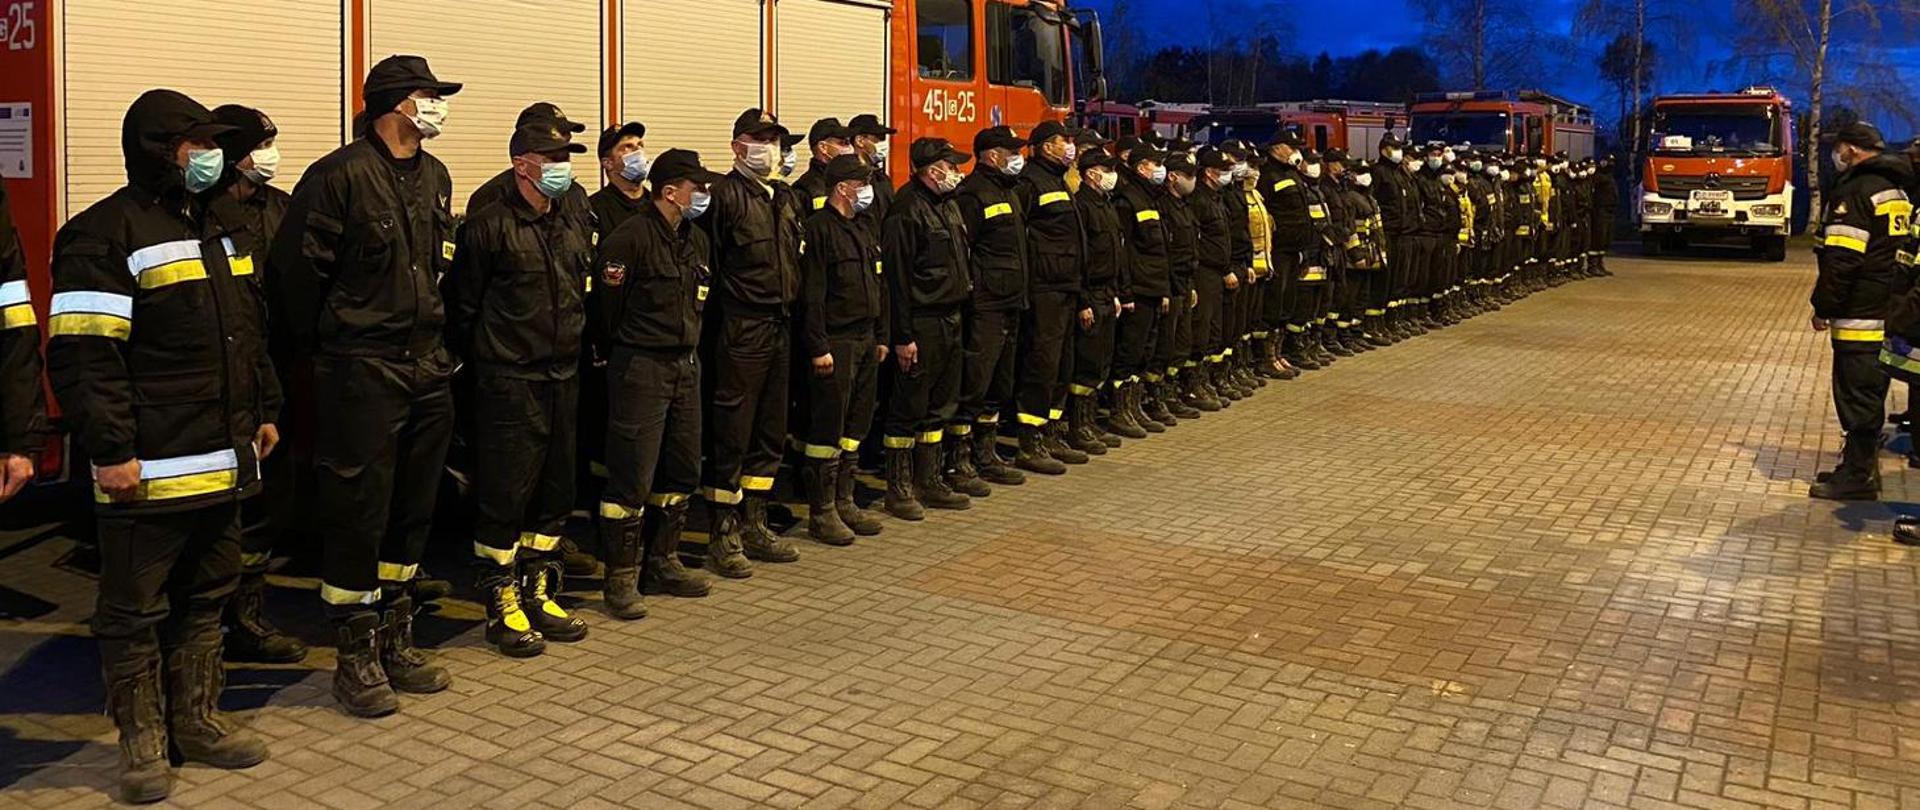 strażacy w ubraniach specjalnych w szeregu na tle samochodów pożarniczych 